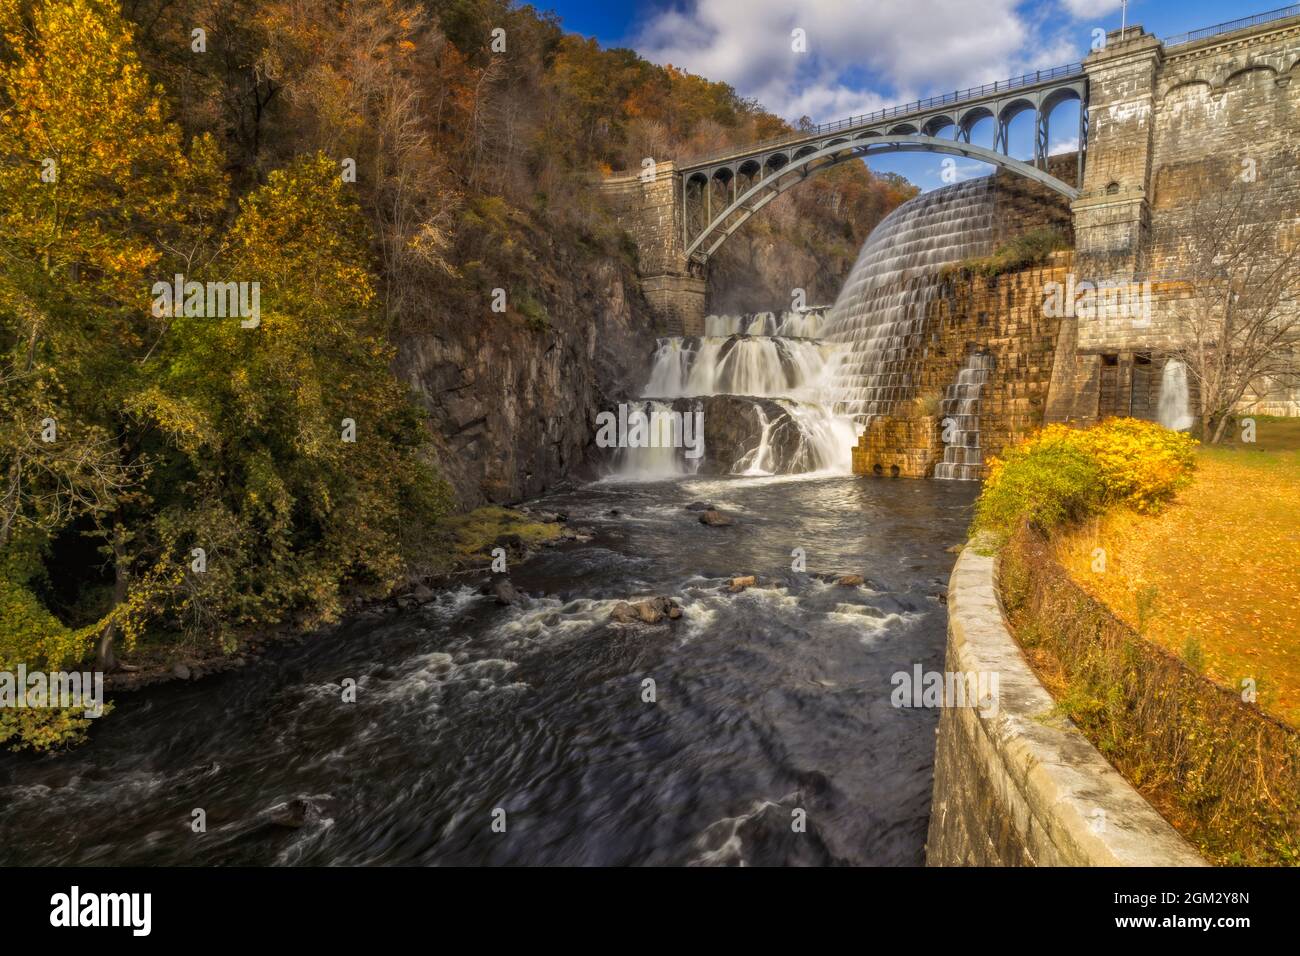 New Croton Hudson Dam - Nueva cascada Croton Dam también conocida como la presa Cornell durante una hermosa tarde de otoño. Esta imagen está disponible en color Foto de stock